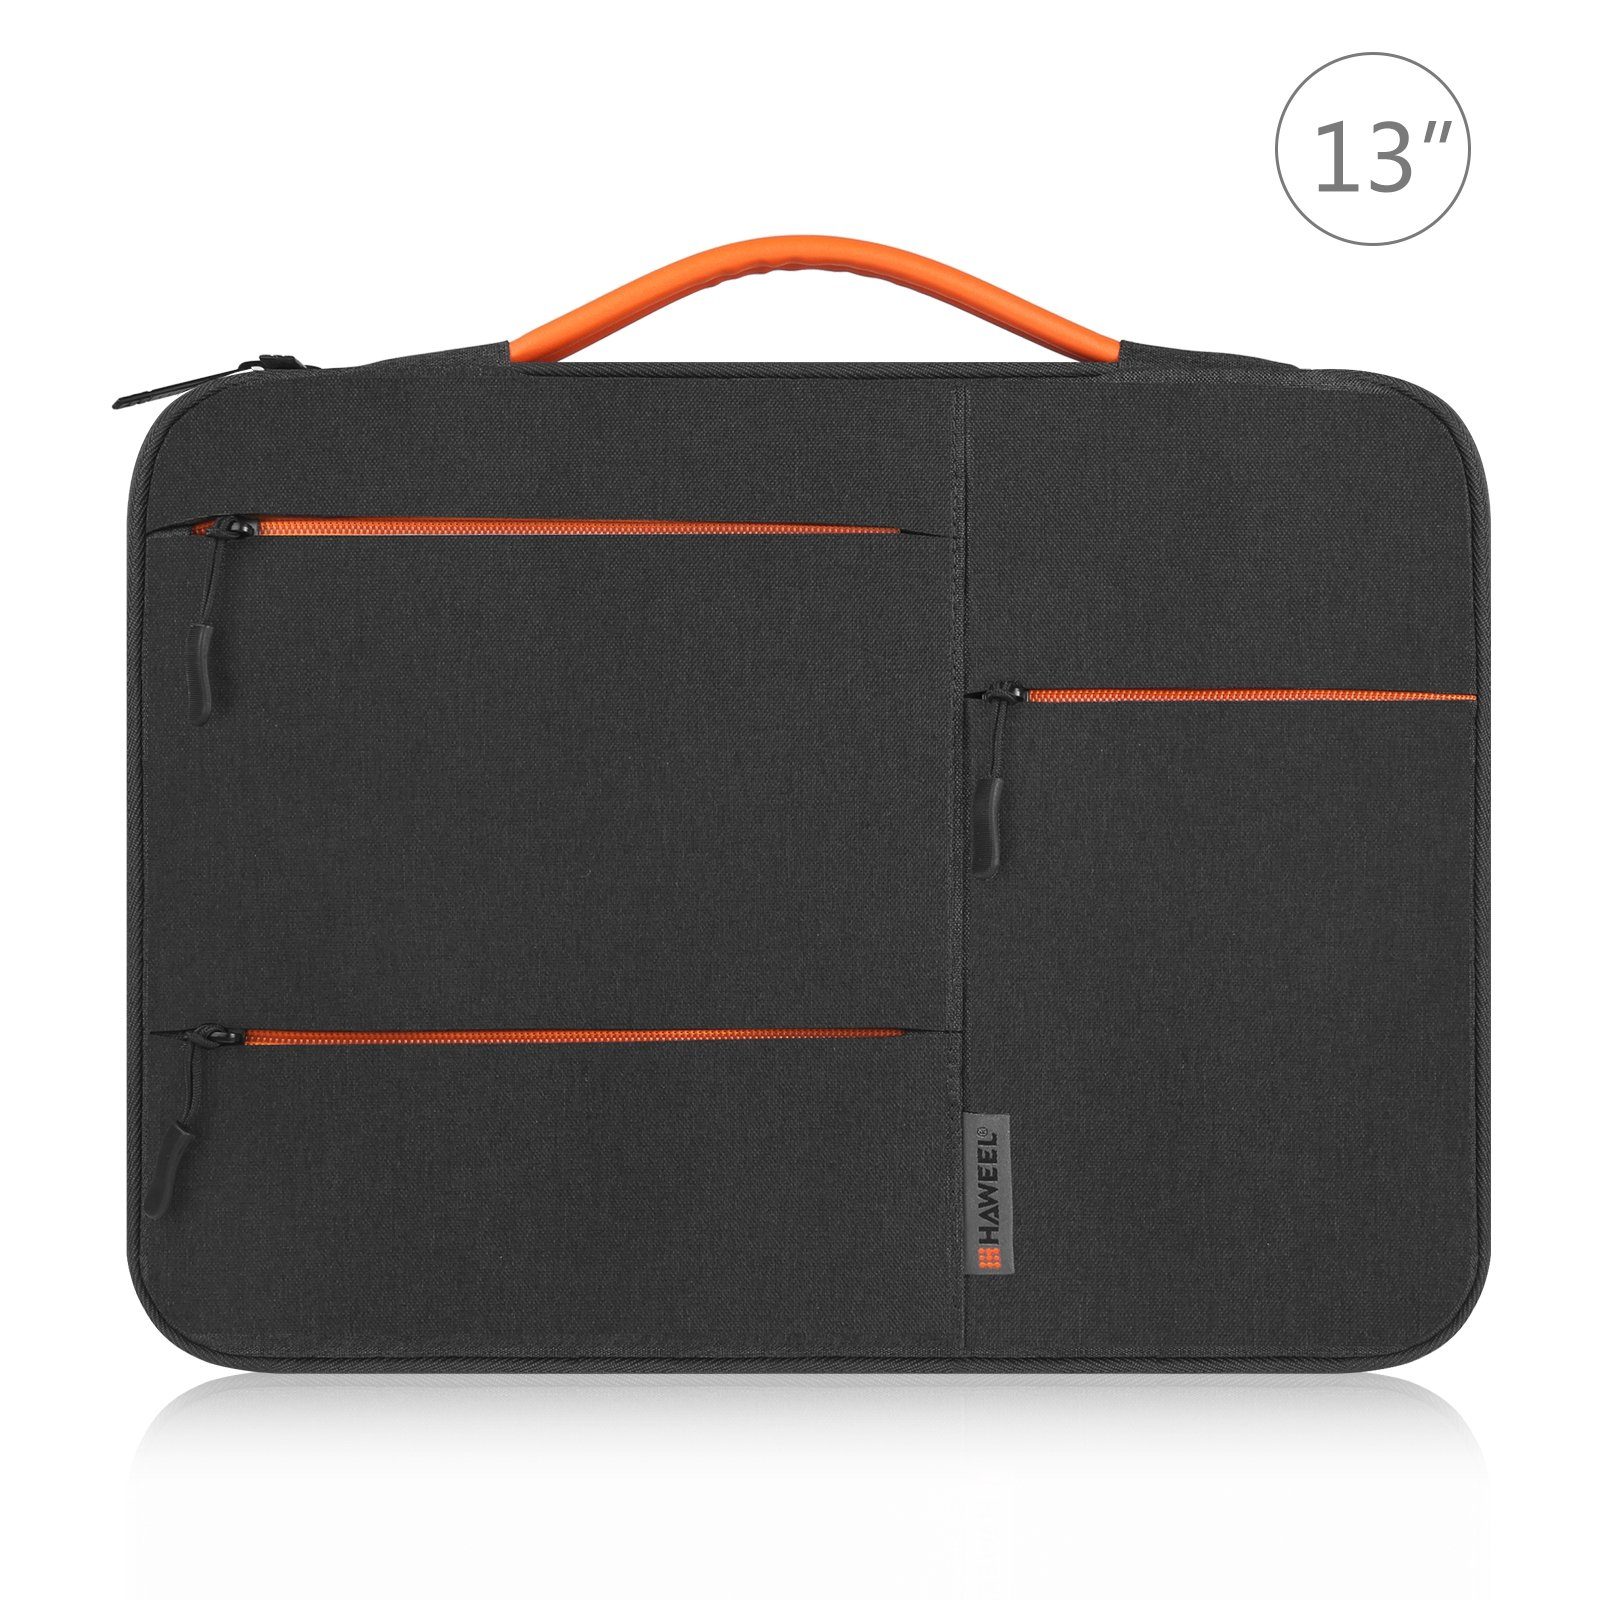 Hülle Universal Laptop Notebook Schwarz 13 Notebooktasche 16 Cover, König Case Schocksicher Tasche Design - Laptoptasche Zoll